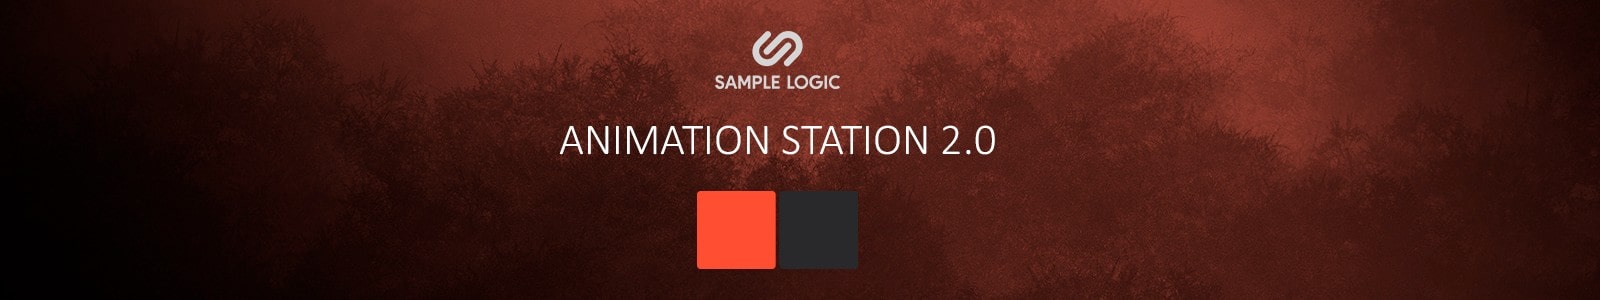 Sample Logic Animation Station 2.0